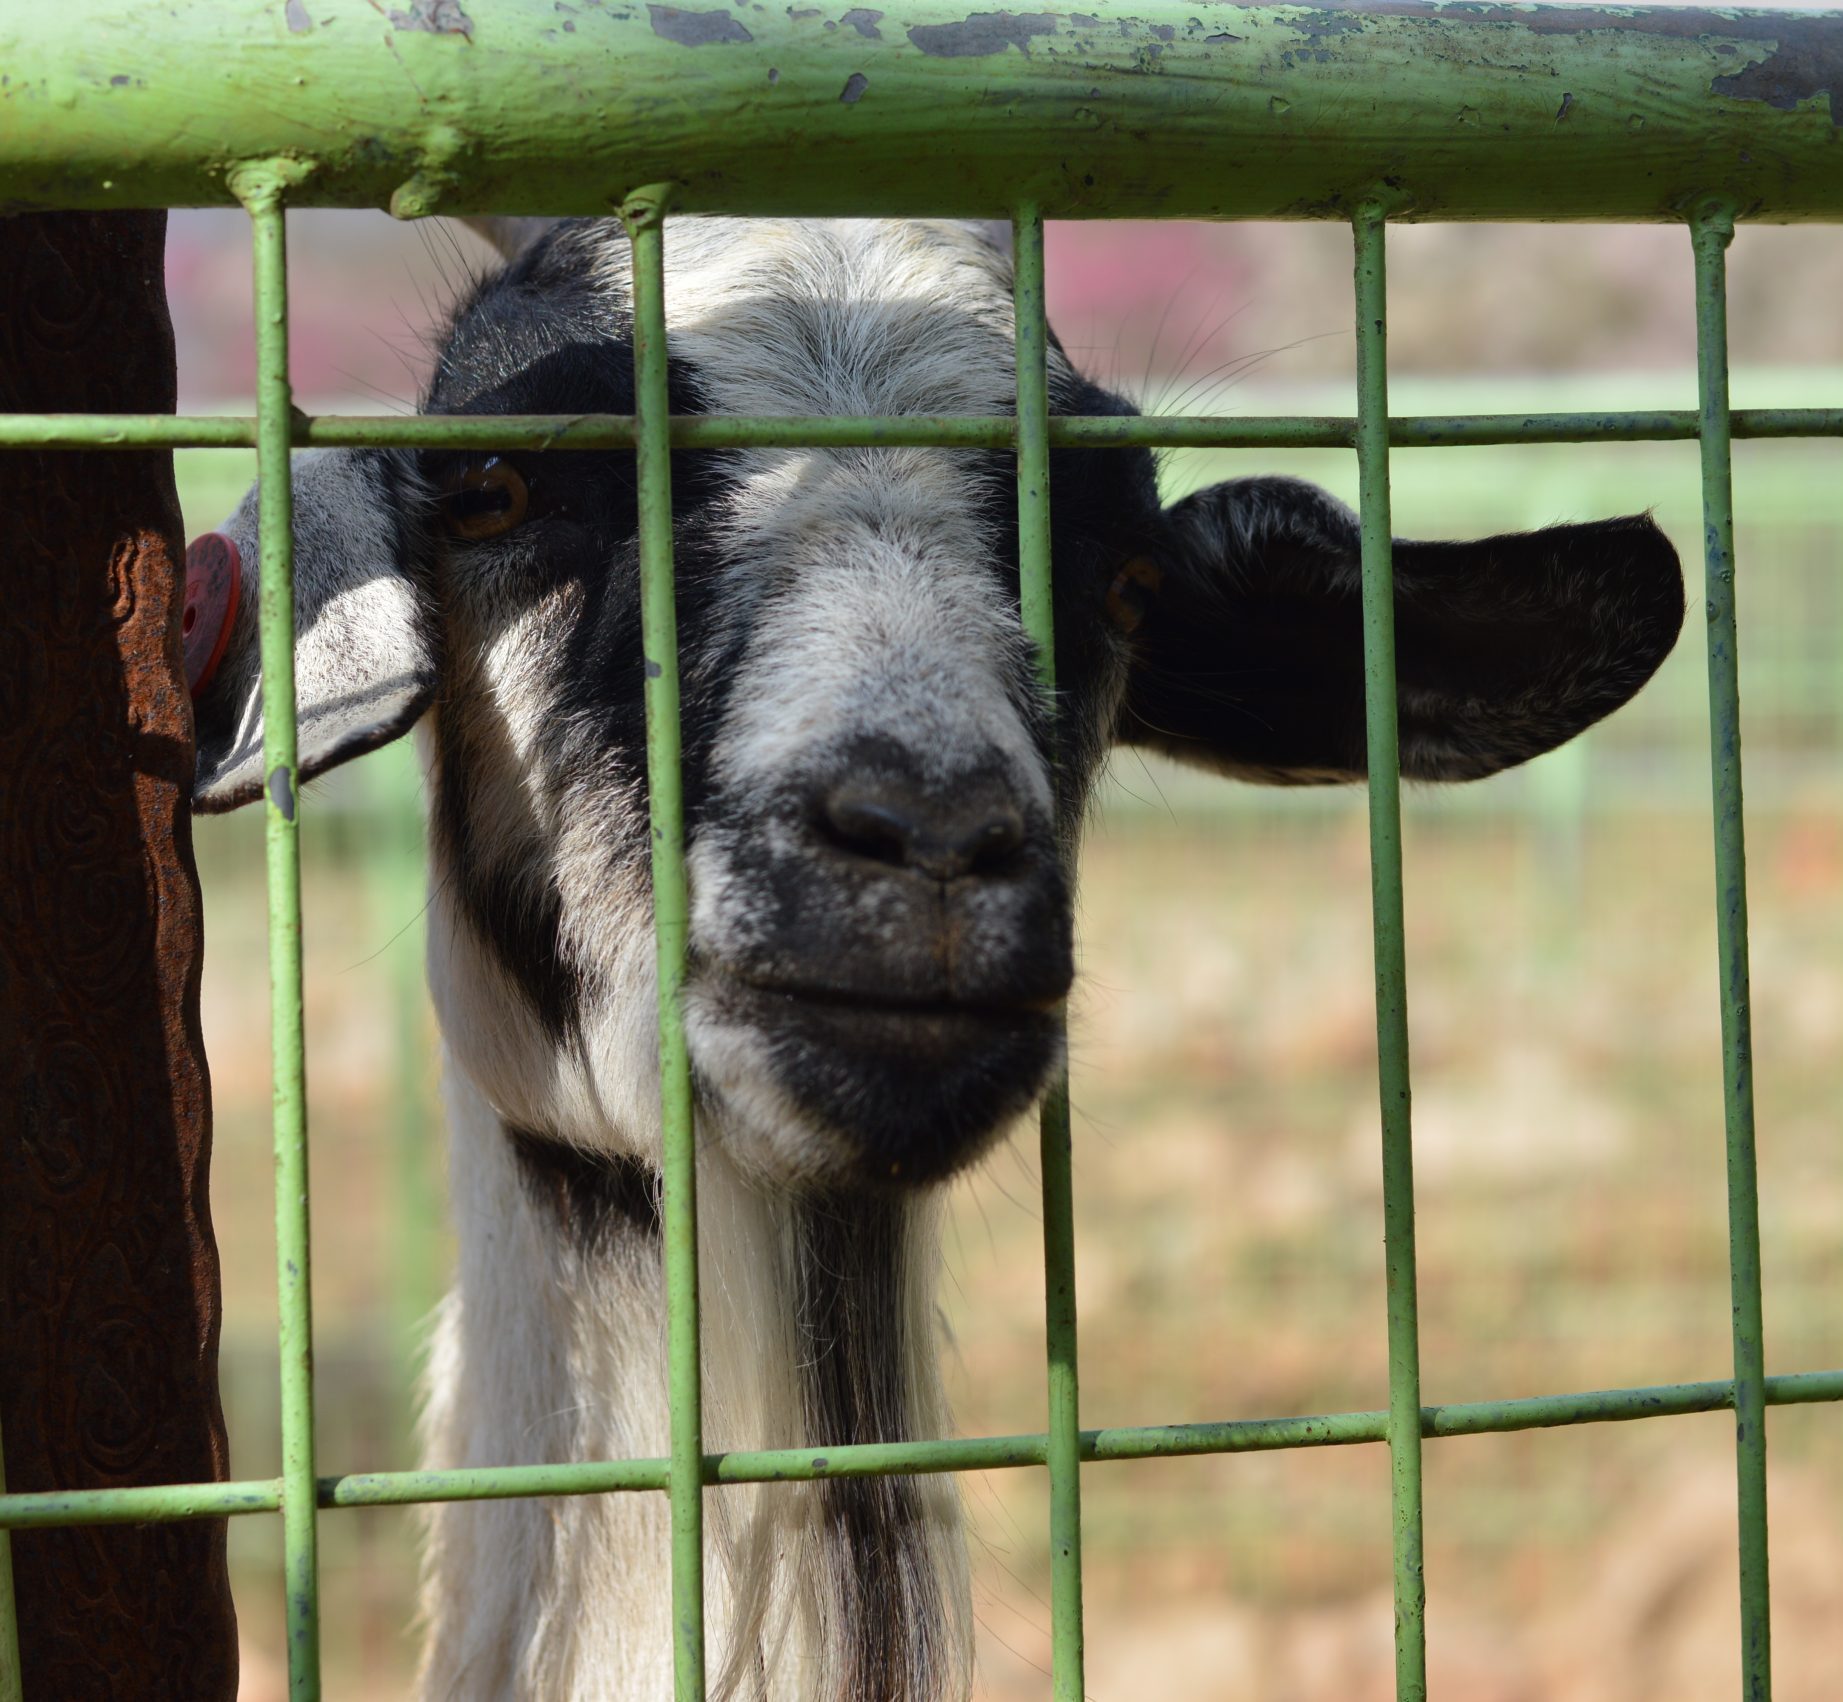 Sad goat in enclosure